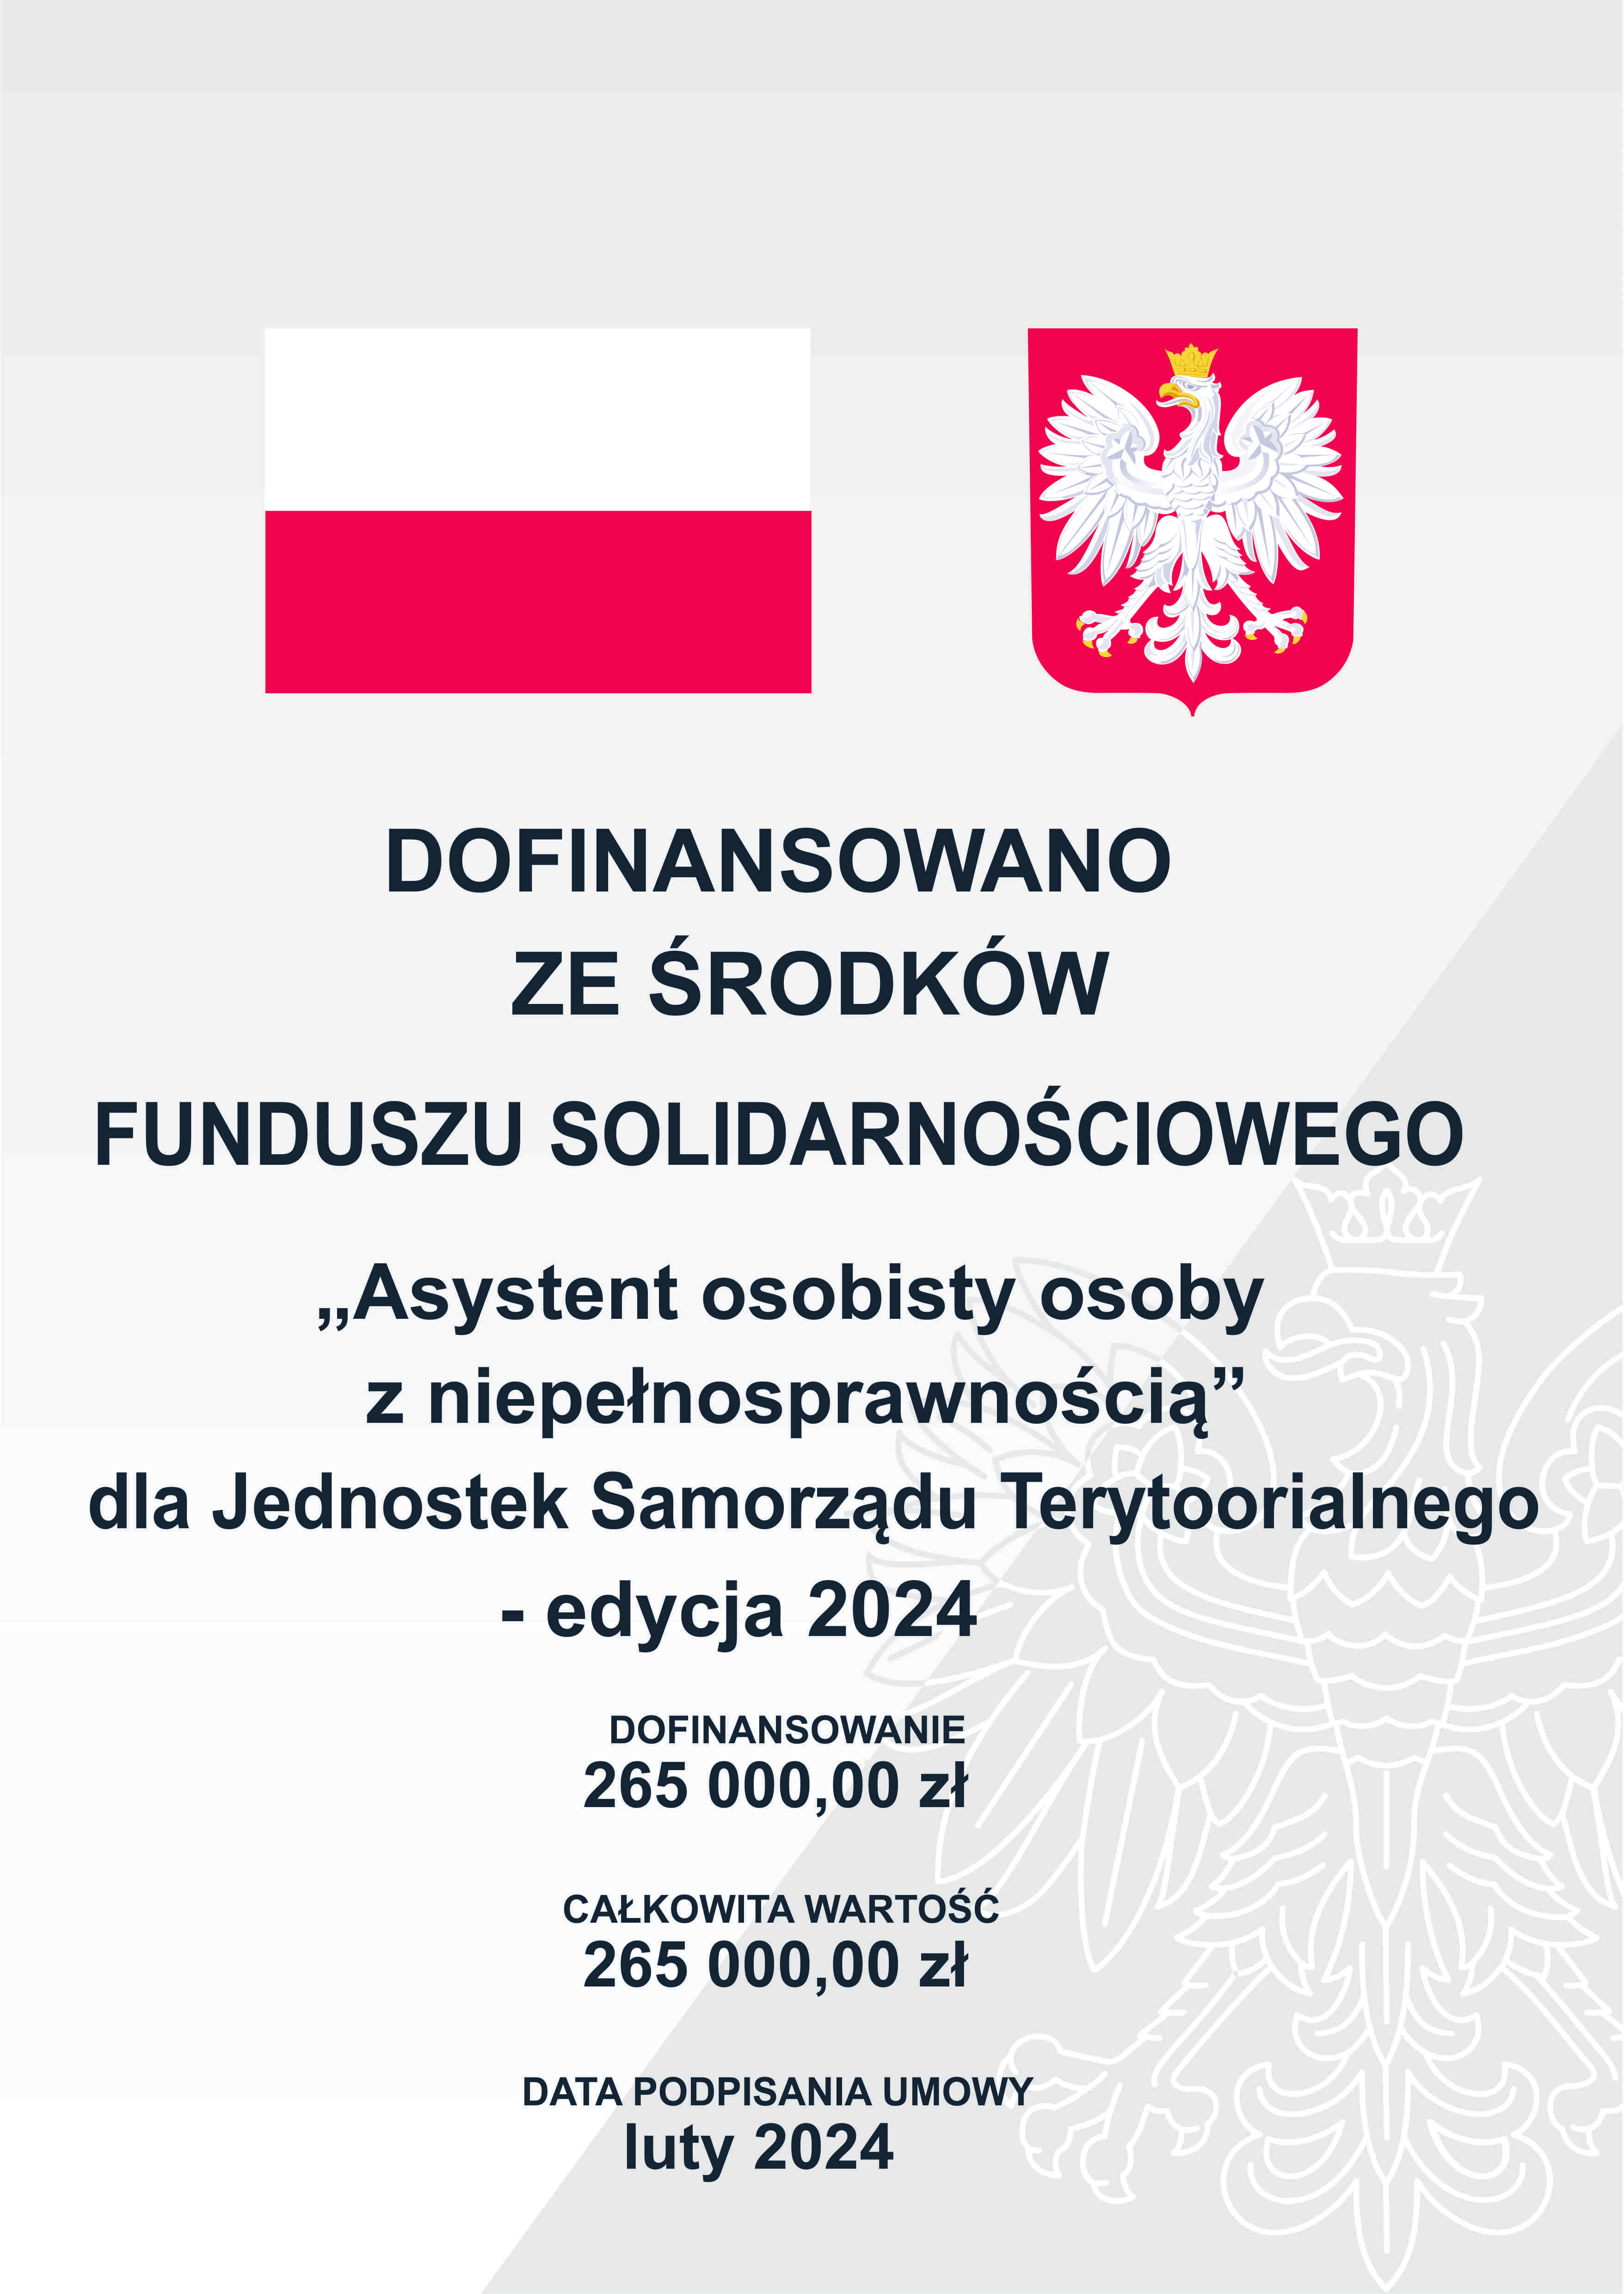 Plakat informacyjny z polskim herbem, dotyczący dofinansowania z Funduszu Solidarnościowego dla osób z niepełnosprawnościami, edycja 2024, o wartości 265 000 zł.